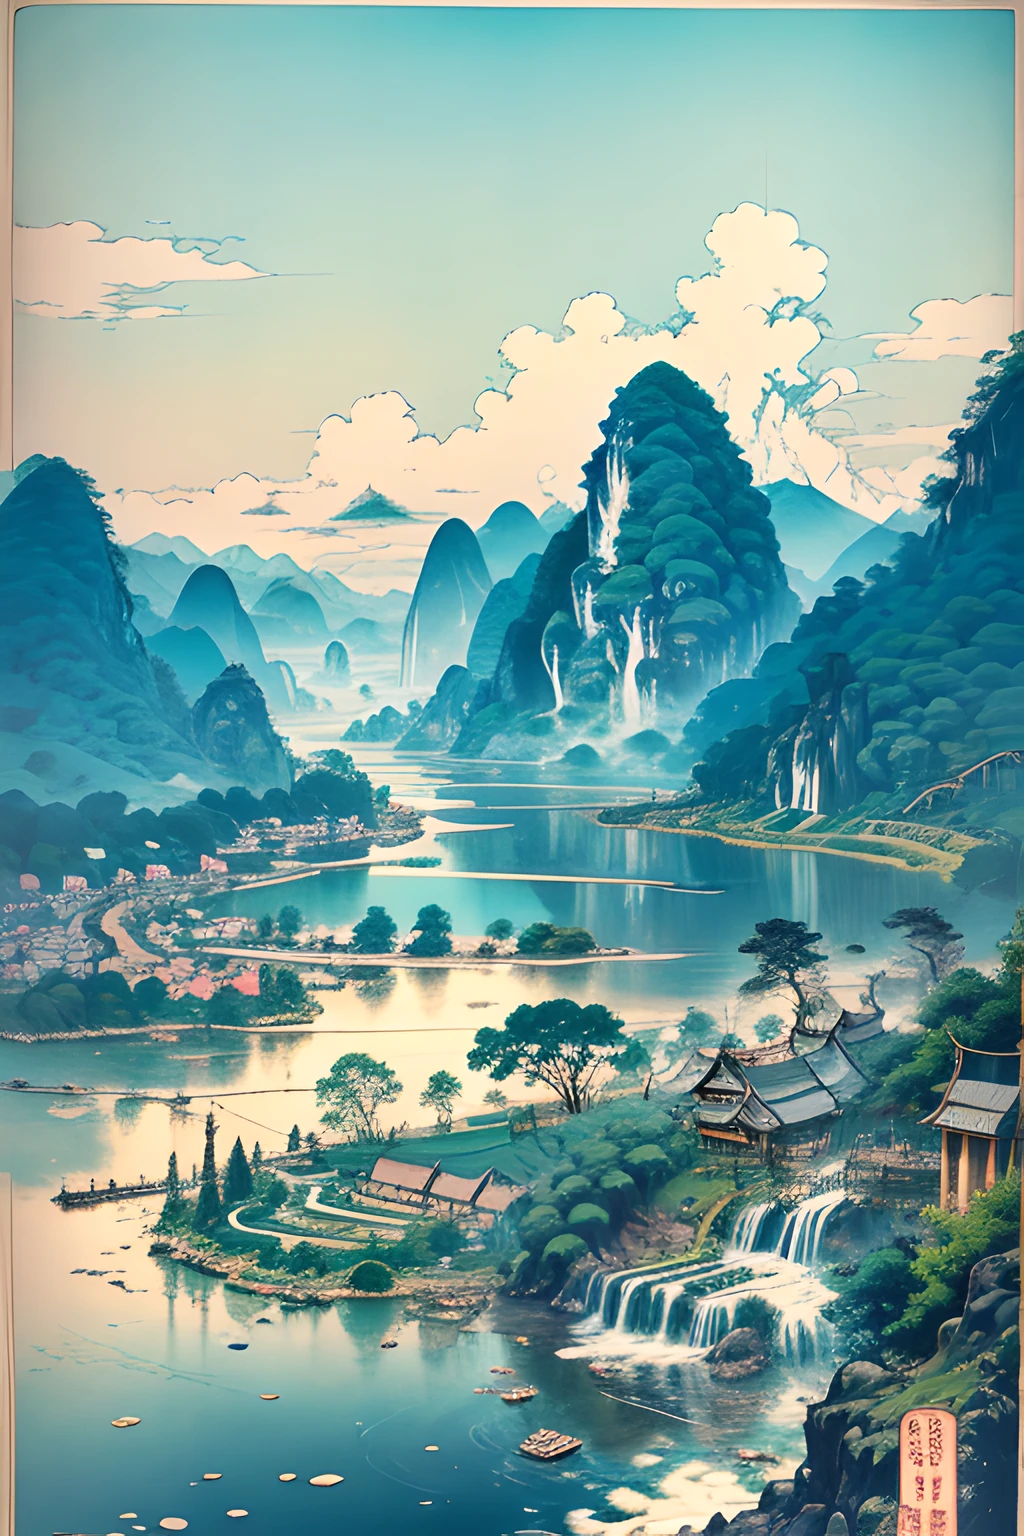 桂林, 广西，春天的早晨，大片蓝天俯瞰独立山峰，飘浮的白云，层层稻田，层叠梯田，湖面，，一种颜色，纹理，图案，精美的艺术版画